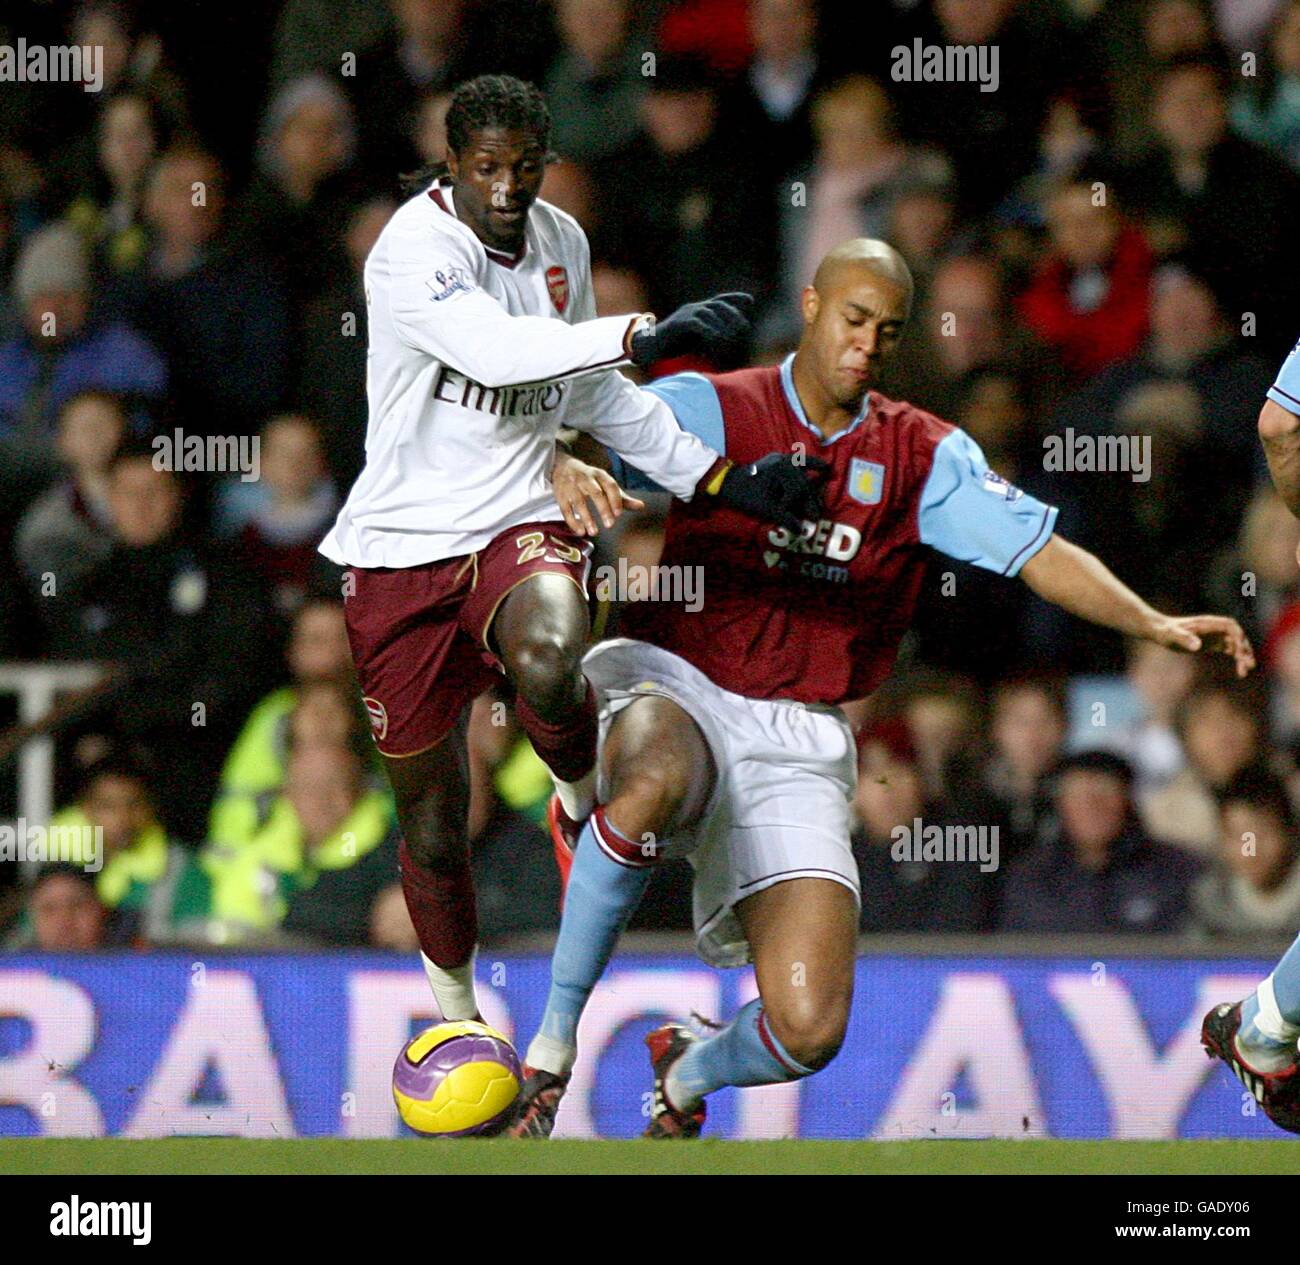 Fußball - Barclays Premier League - Aston Villa gegen Arsenal - Villa Park. Emmanuel Adebayor von Arsenal und Zat Knight von Aston Villa (rechts) kämpfen um den Ball Stockfoto